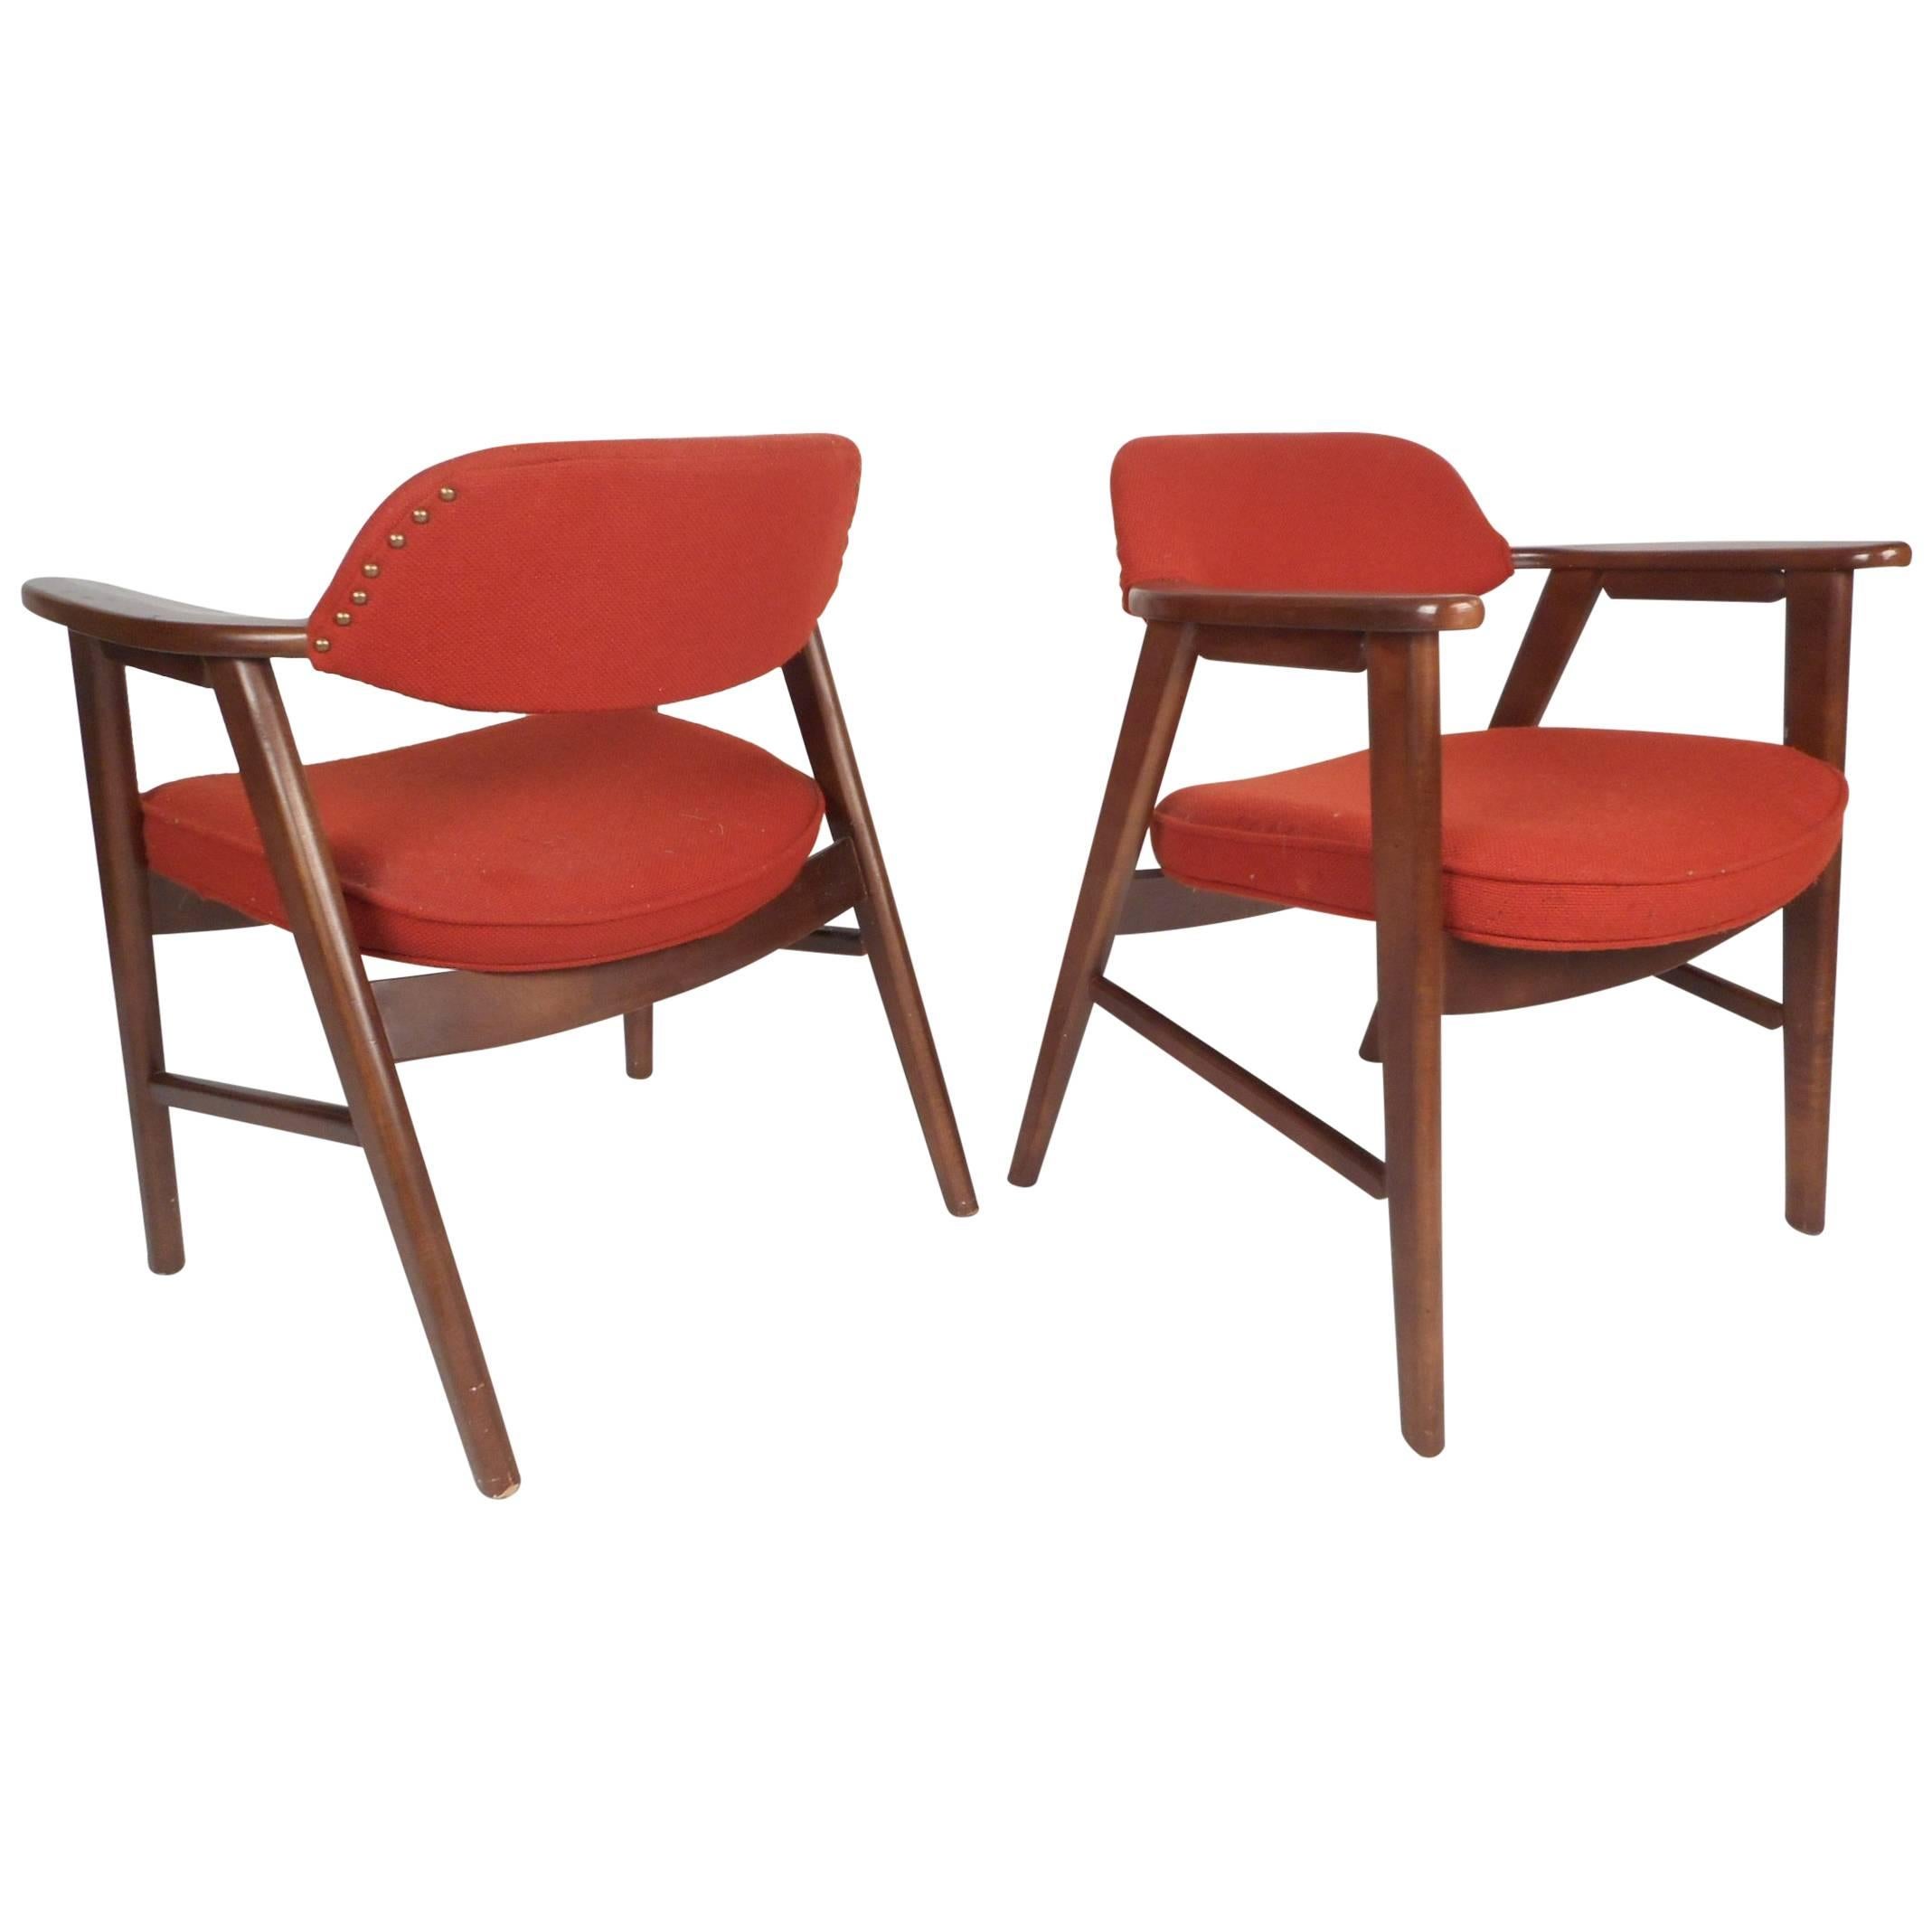 Paire de fauteuils scandinaves modernes scandinaves